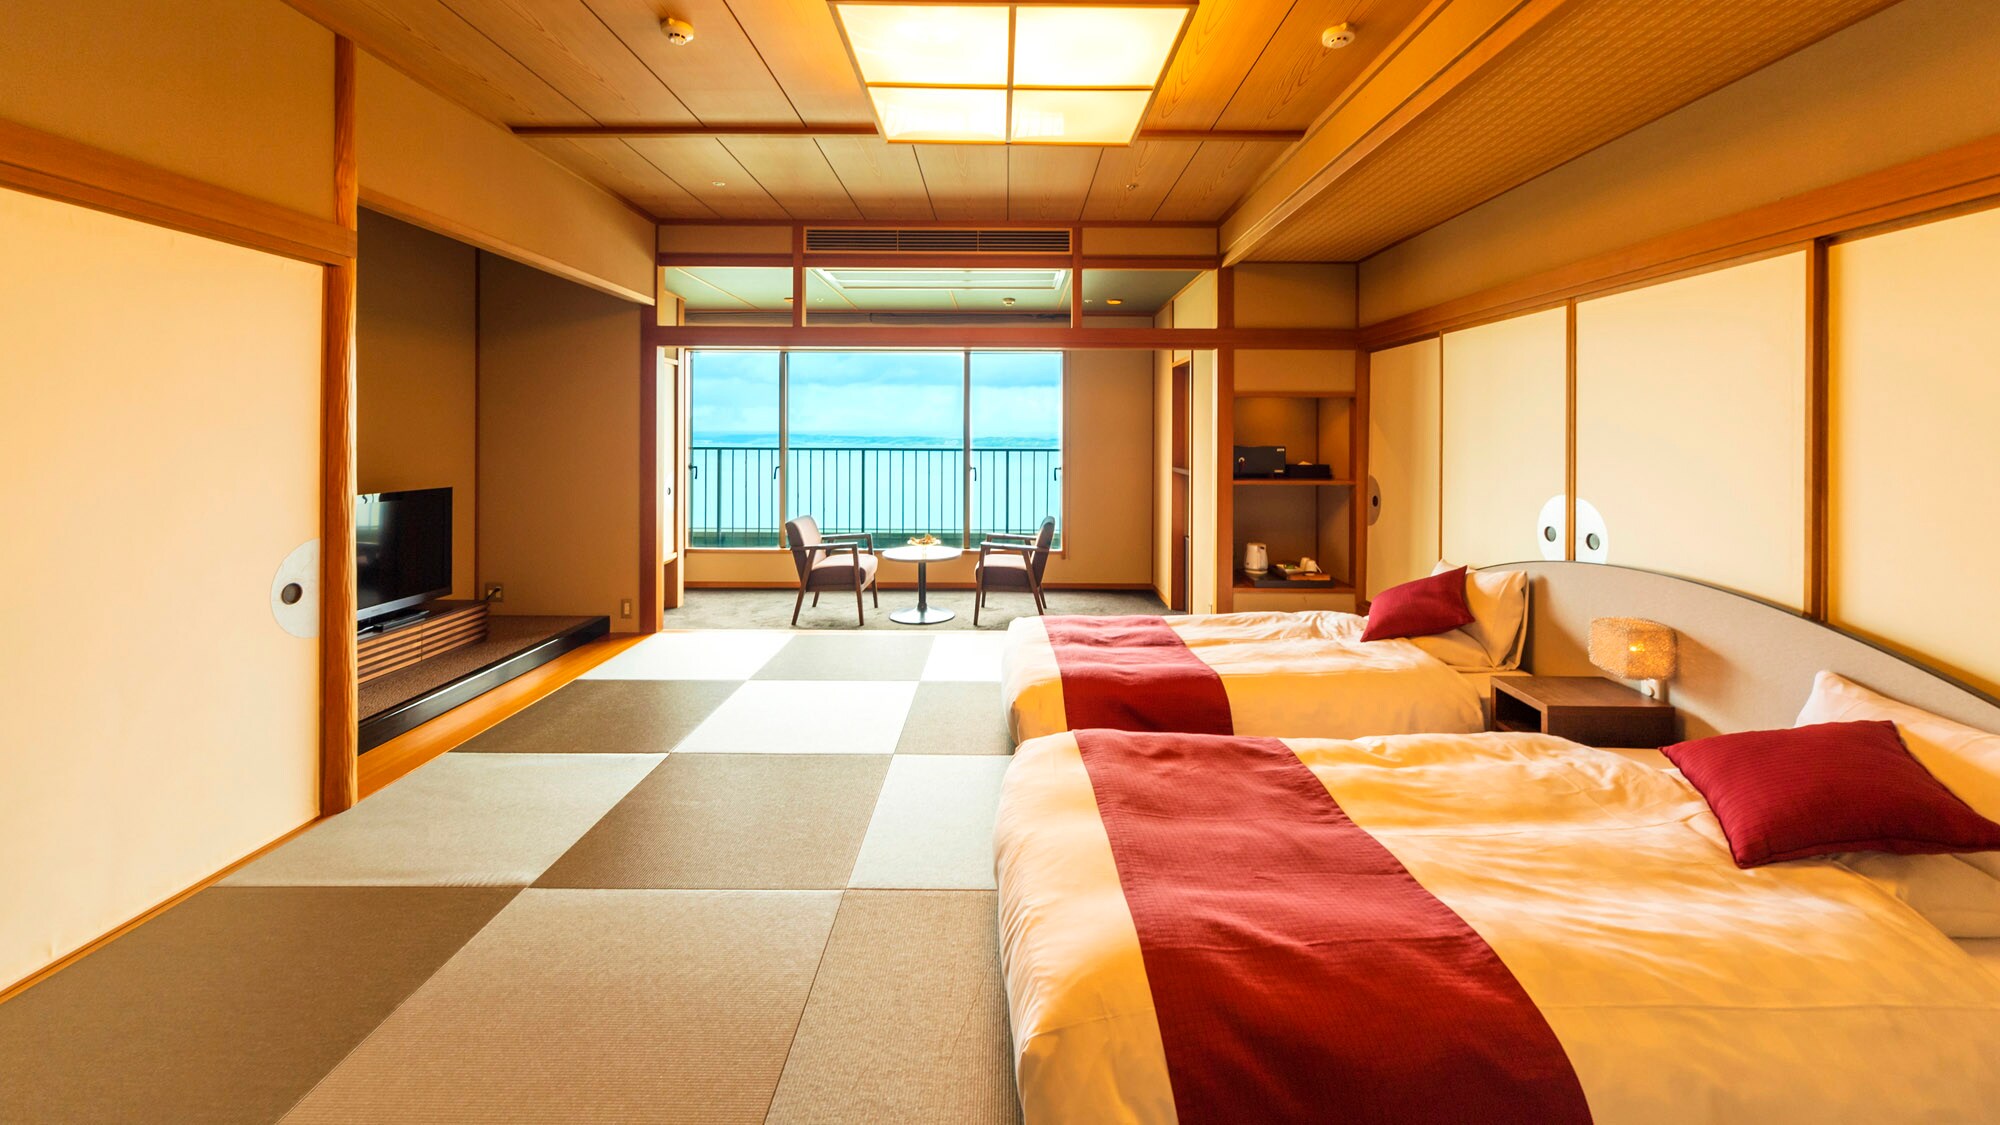 ห้องสไตล์ญี่ปุ่น 2 เตียง * ตัวอย่าง